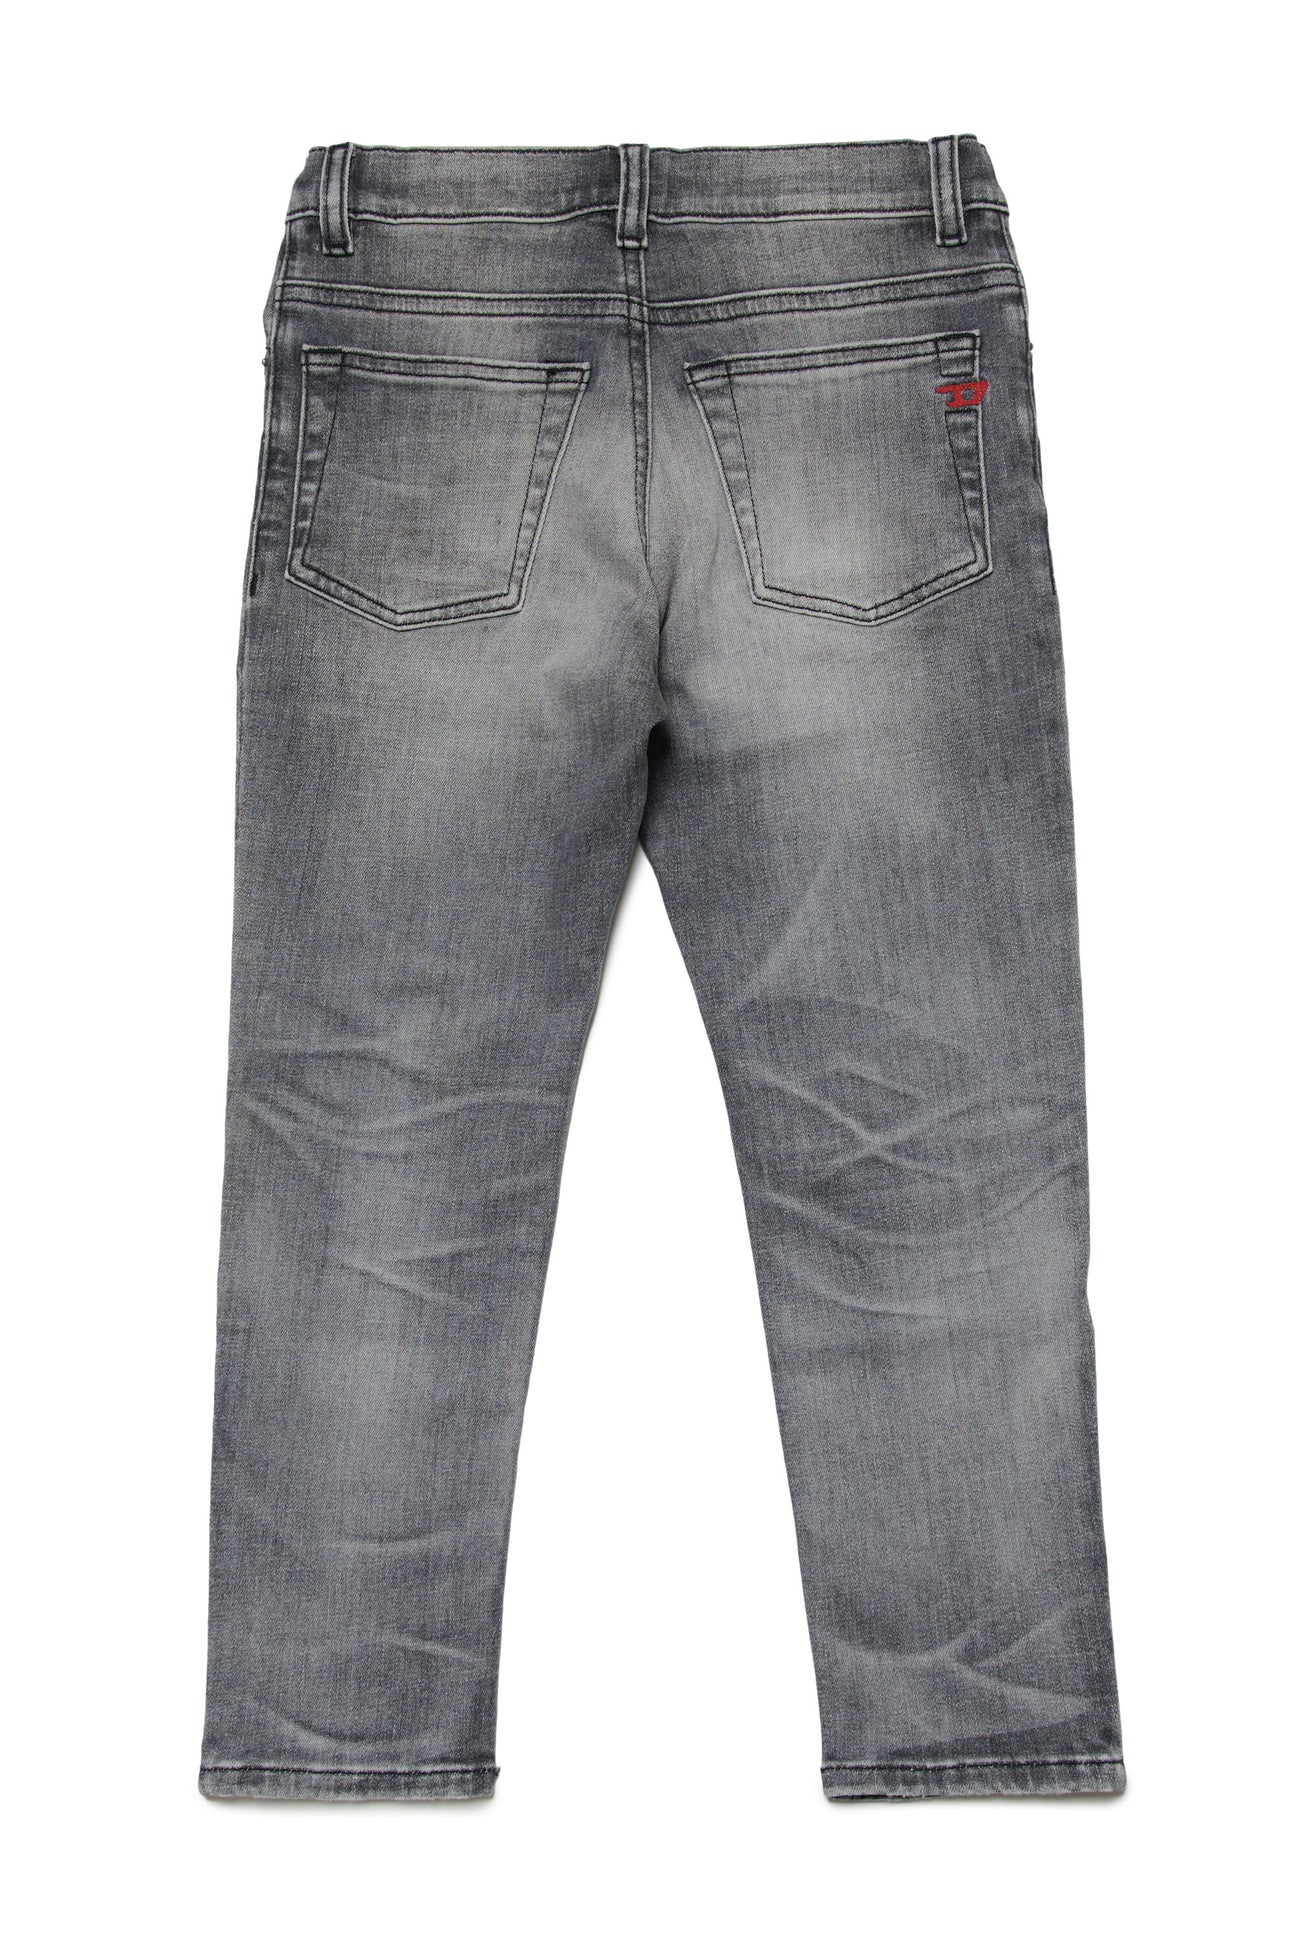 Shaded gray regular jeans - 2005 Shaded gray regular jeans - 2005